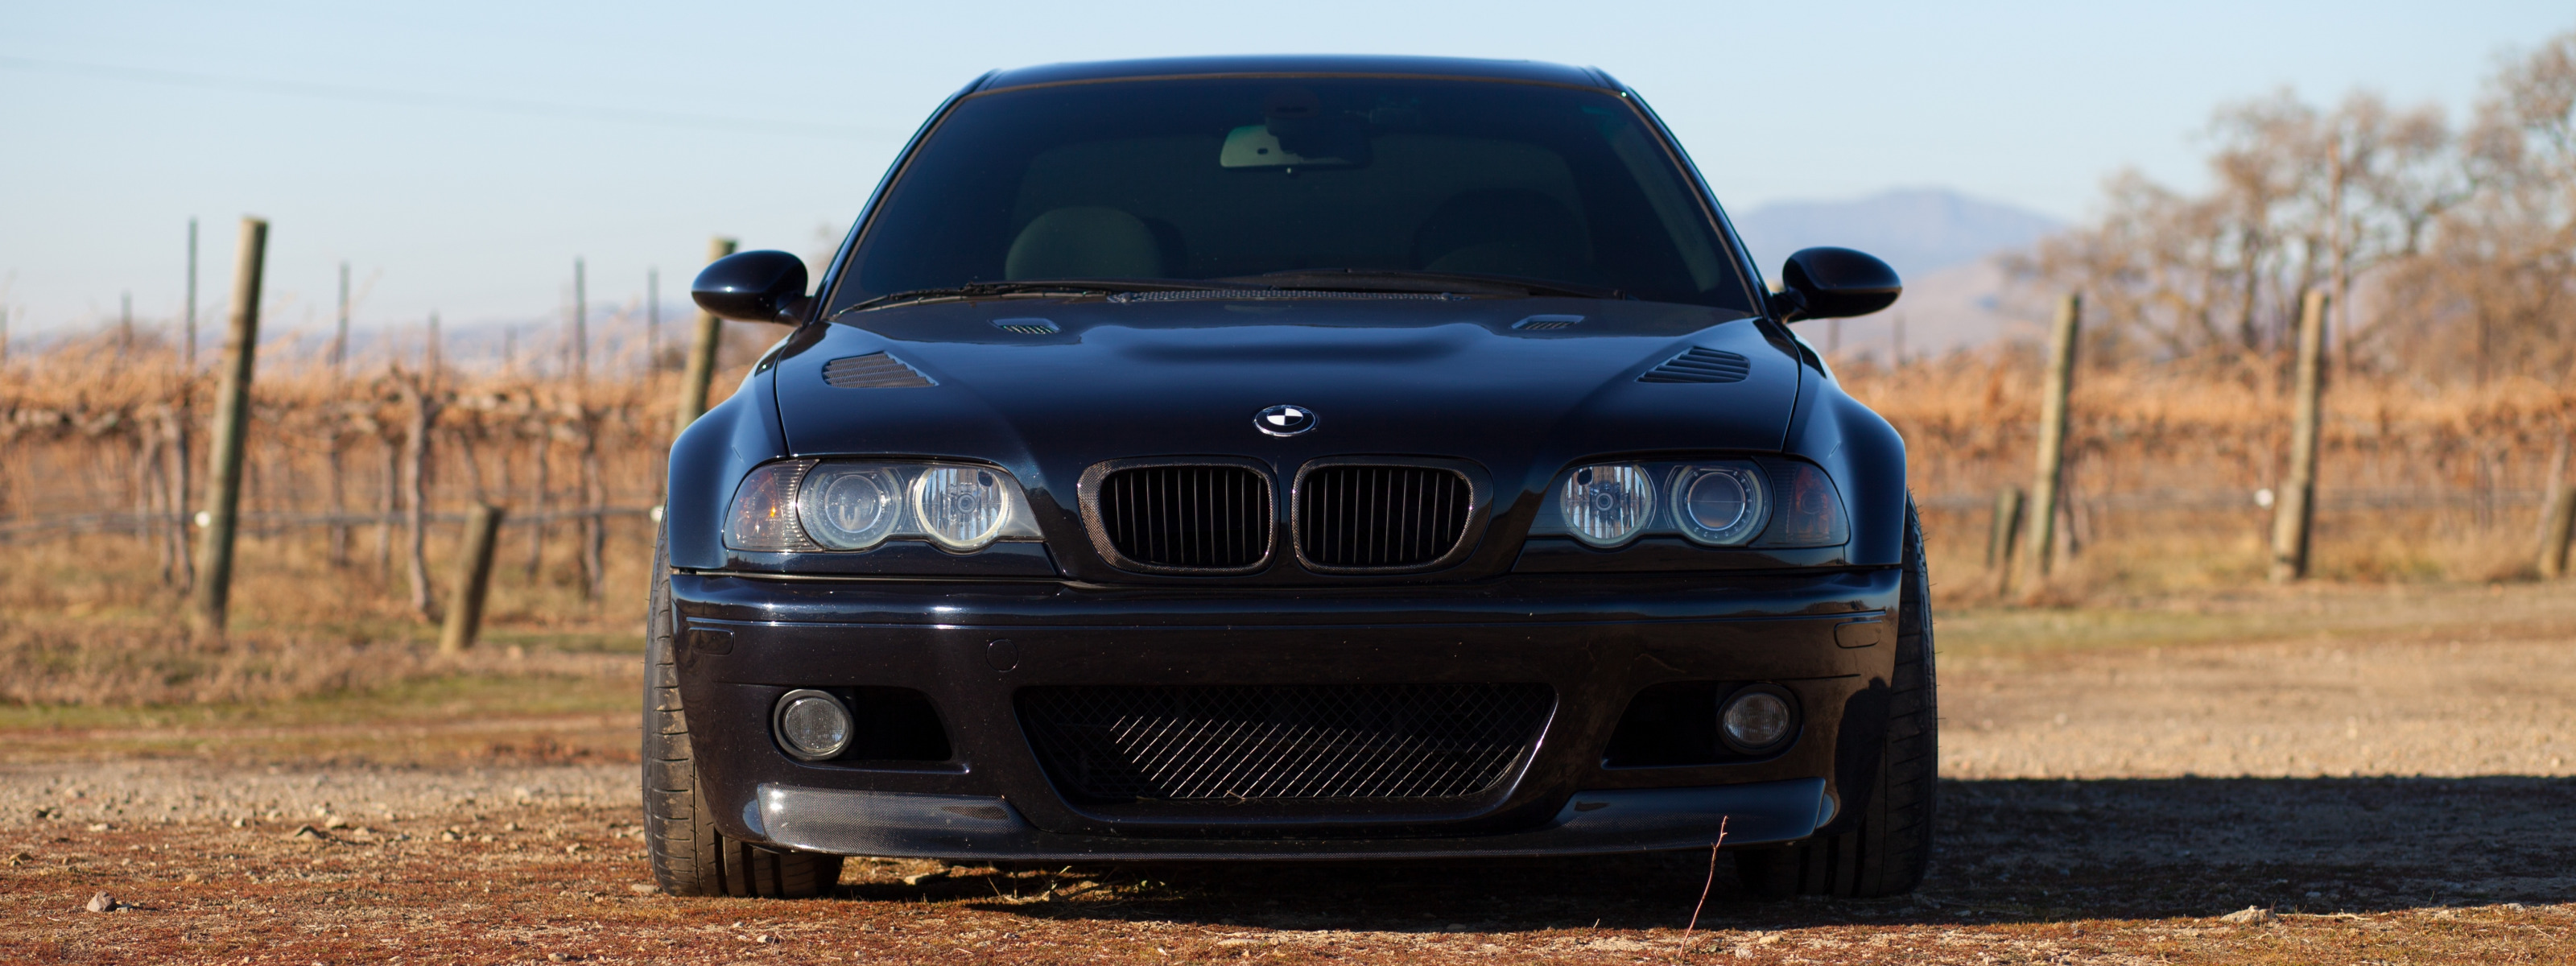 Хочу бэху песня. BMW 46 тонированная. E46 черный низ. 850 Чёрная бэха Серёга. Чёрная БМВ х5 в лесу с синими фарами.